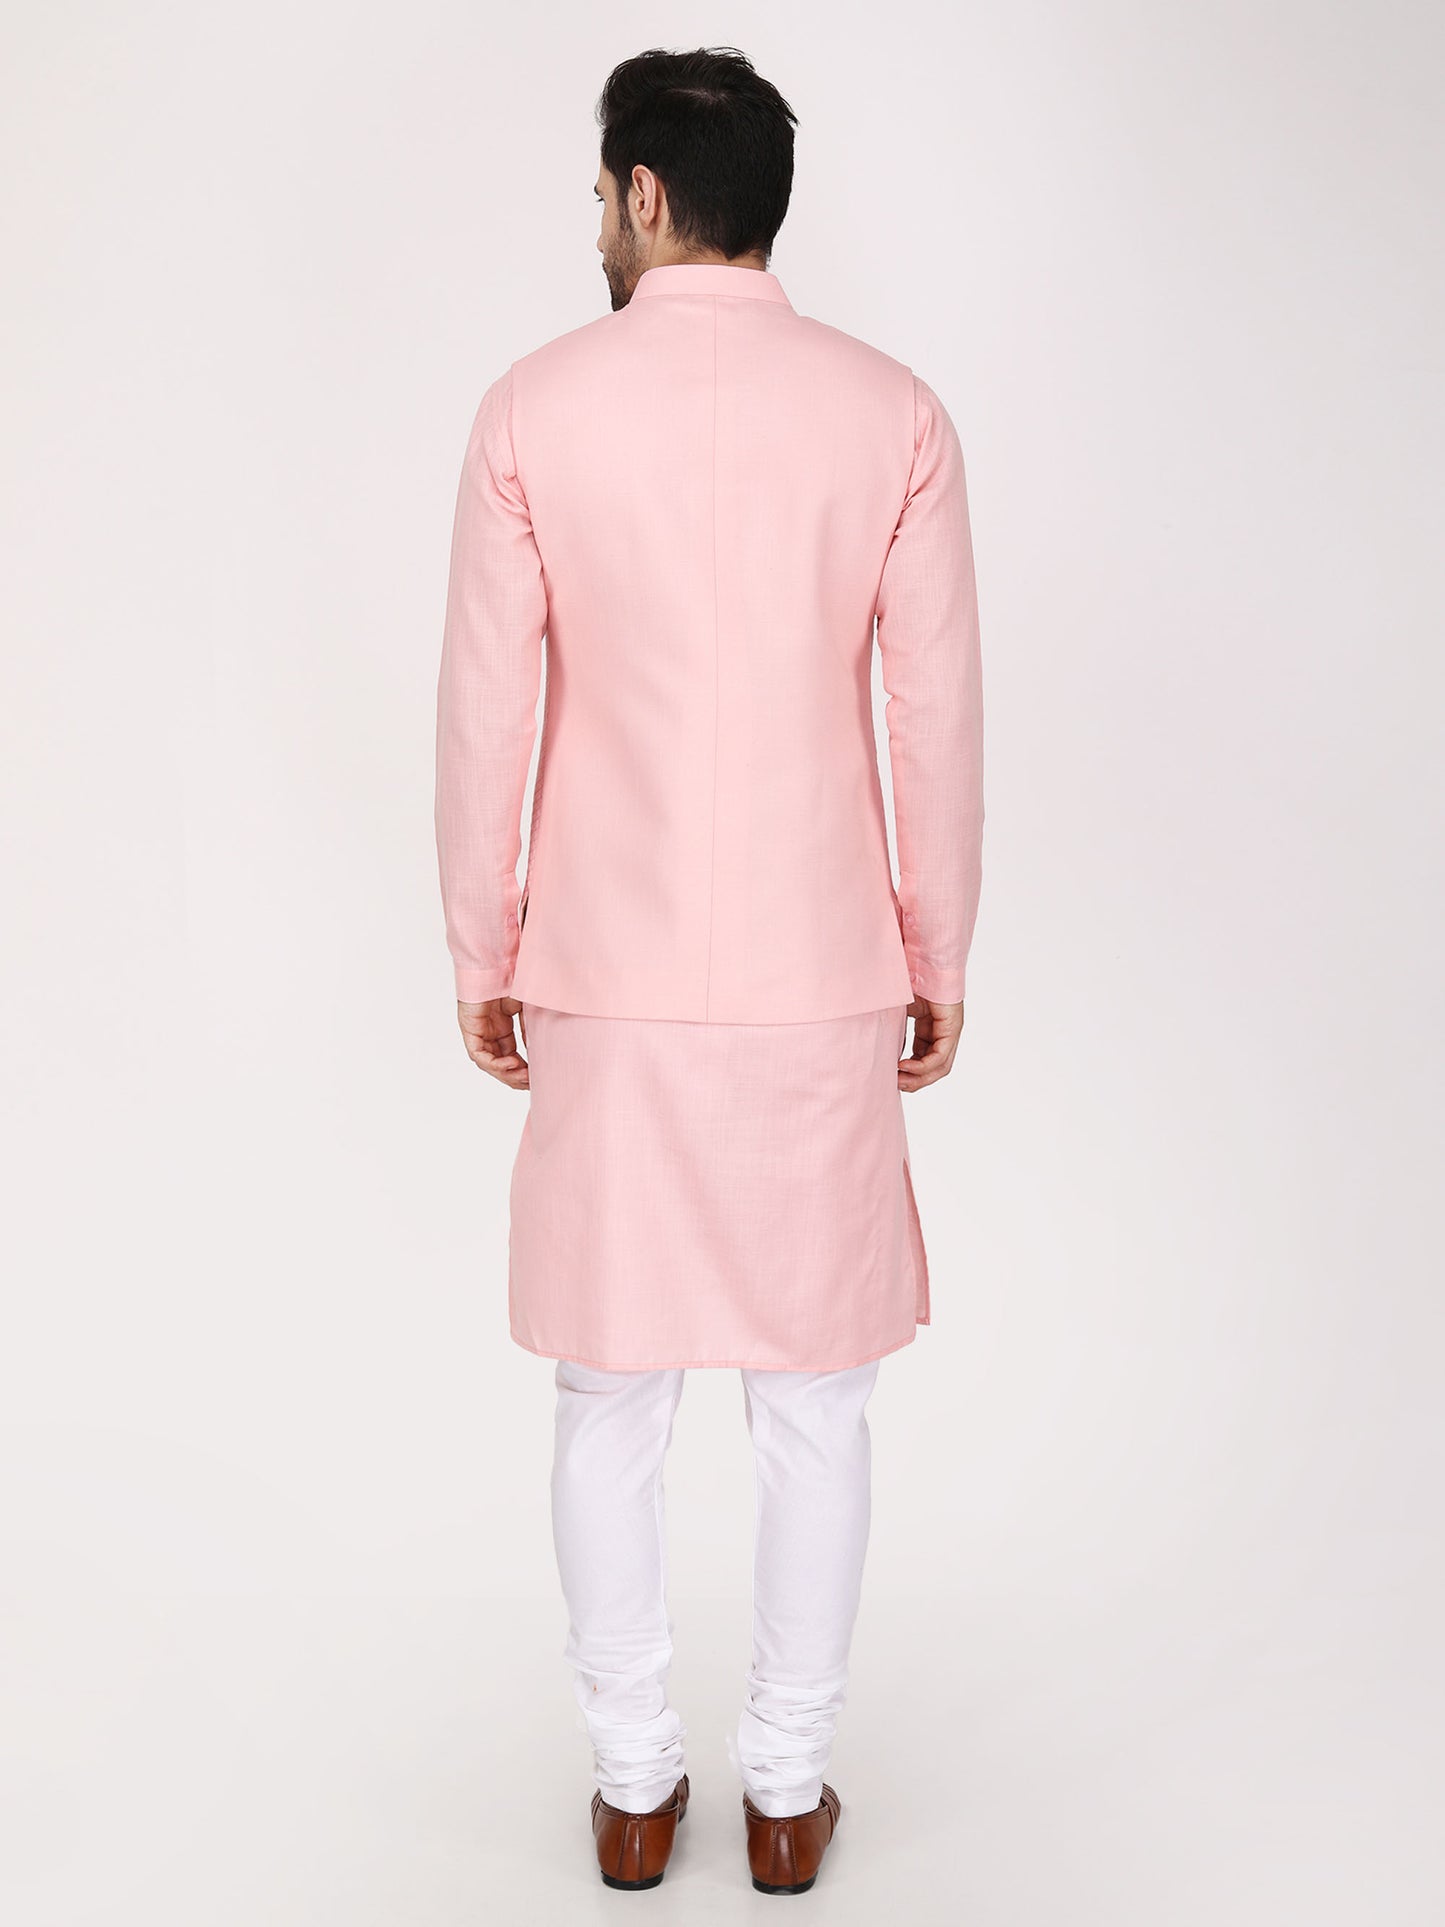 Pink Nehru Jacket with Kurta Churidaar